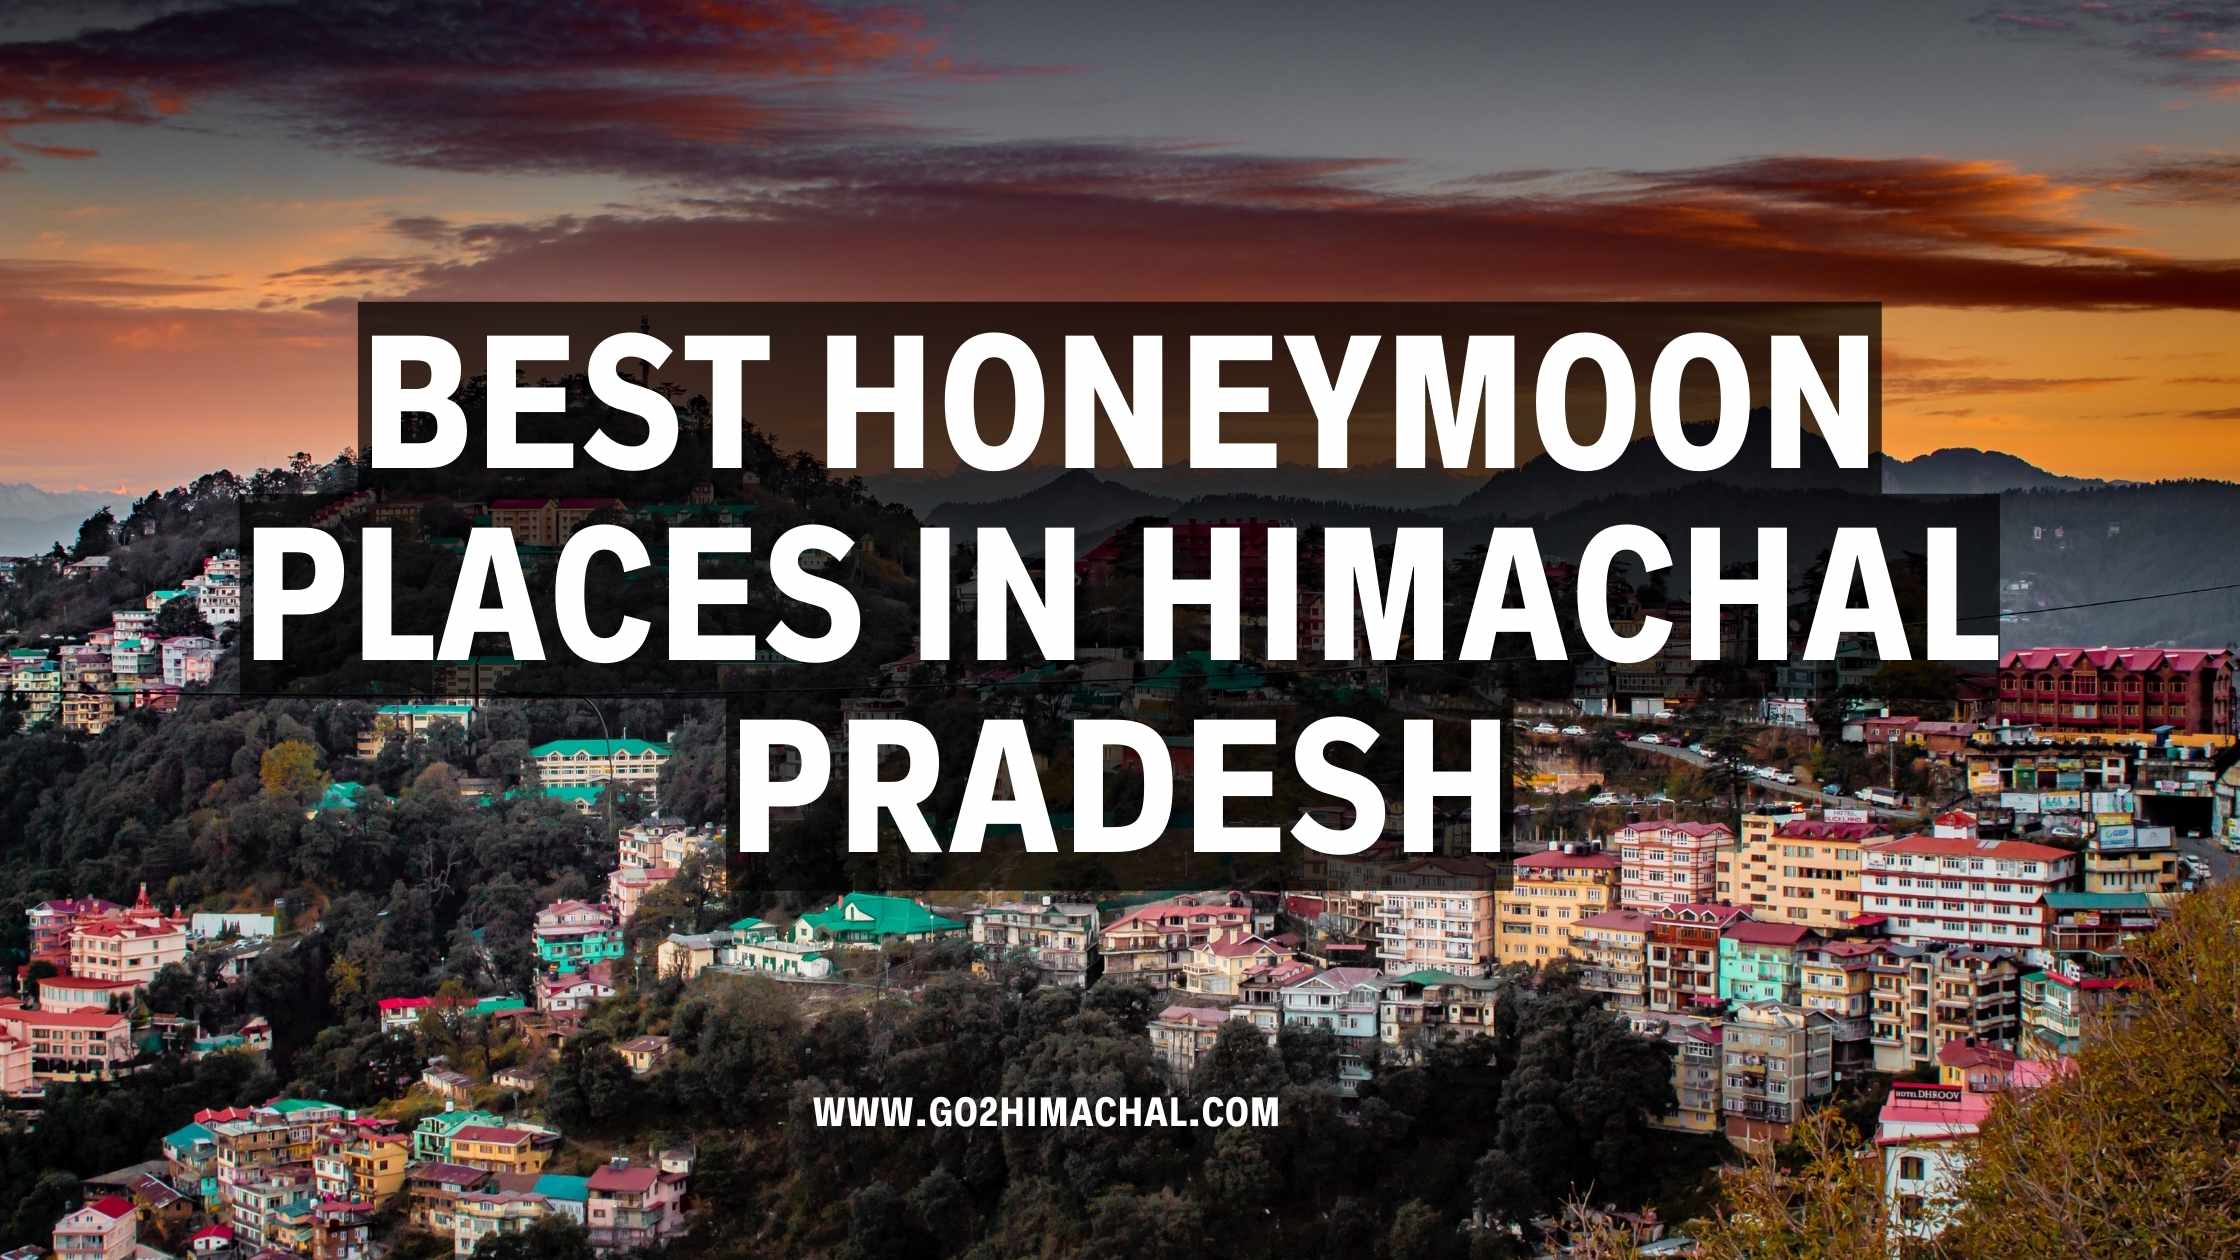 Best Honeymoon places in himachal pradesh